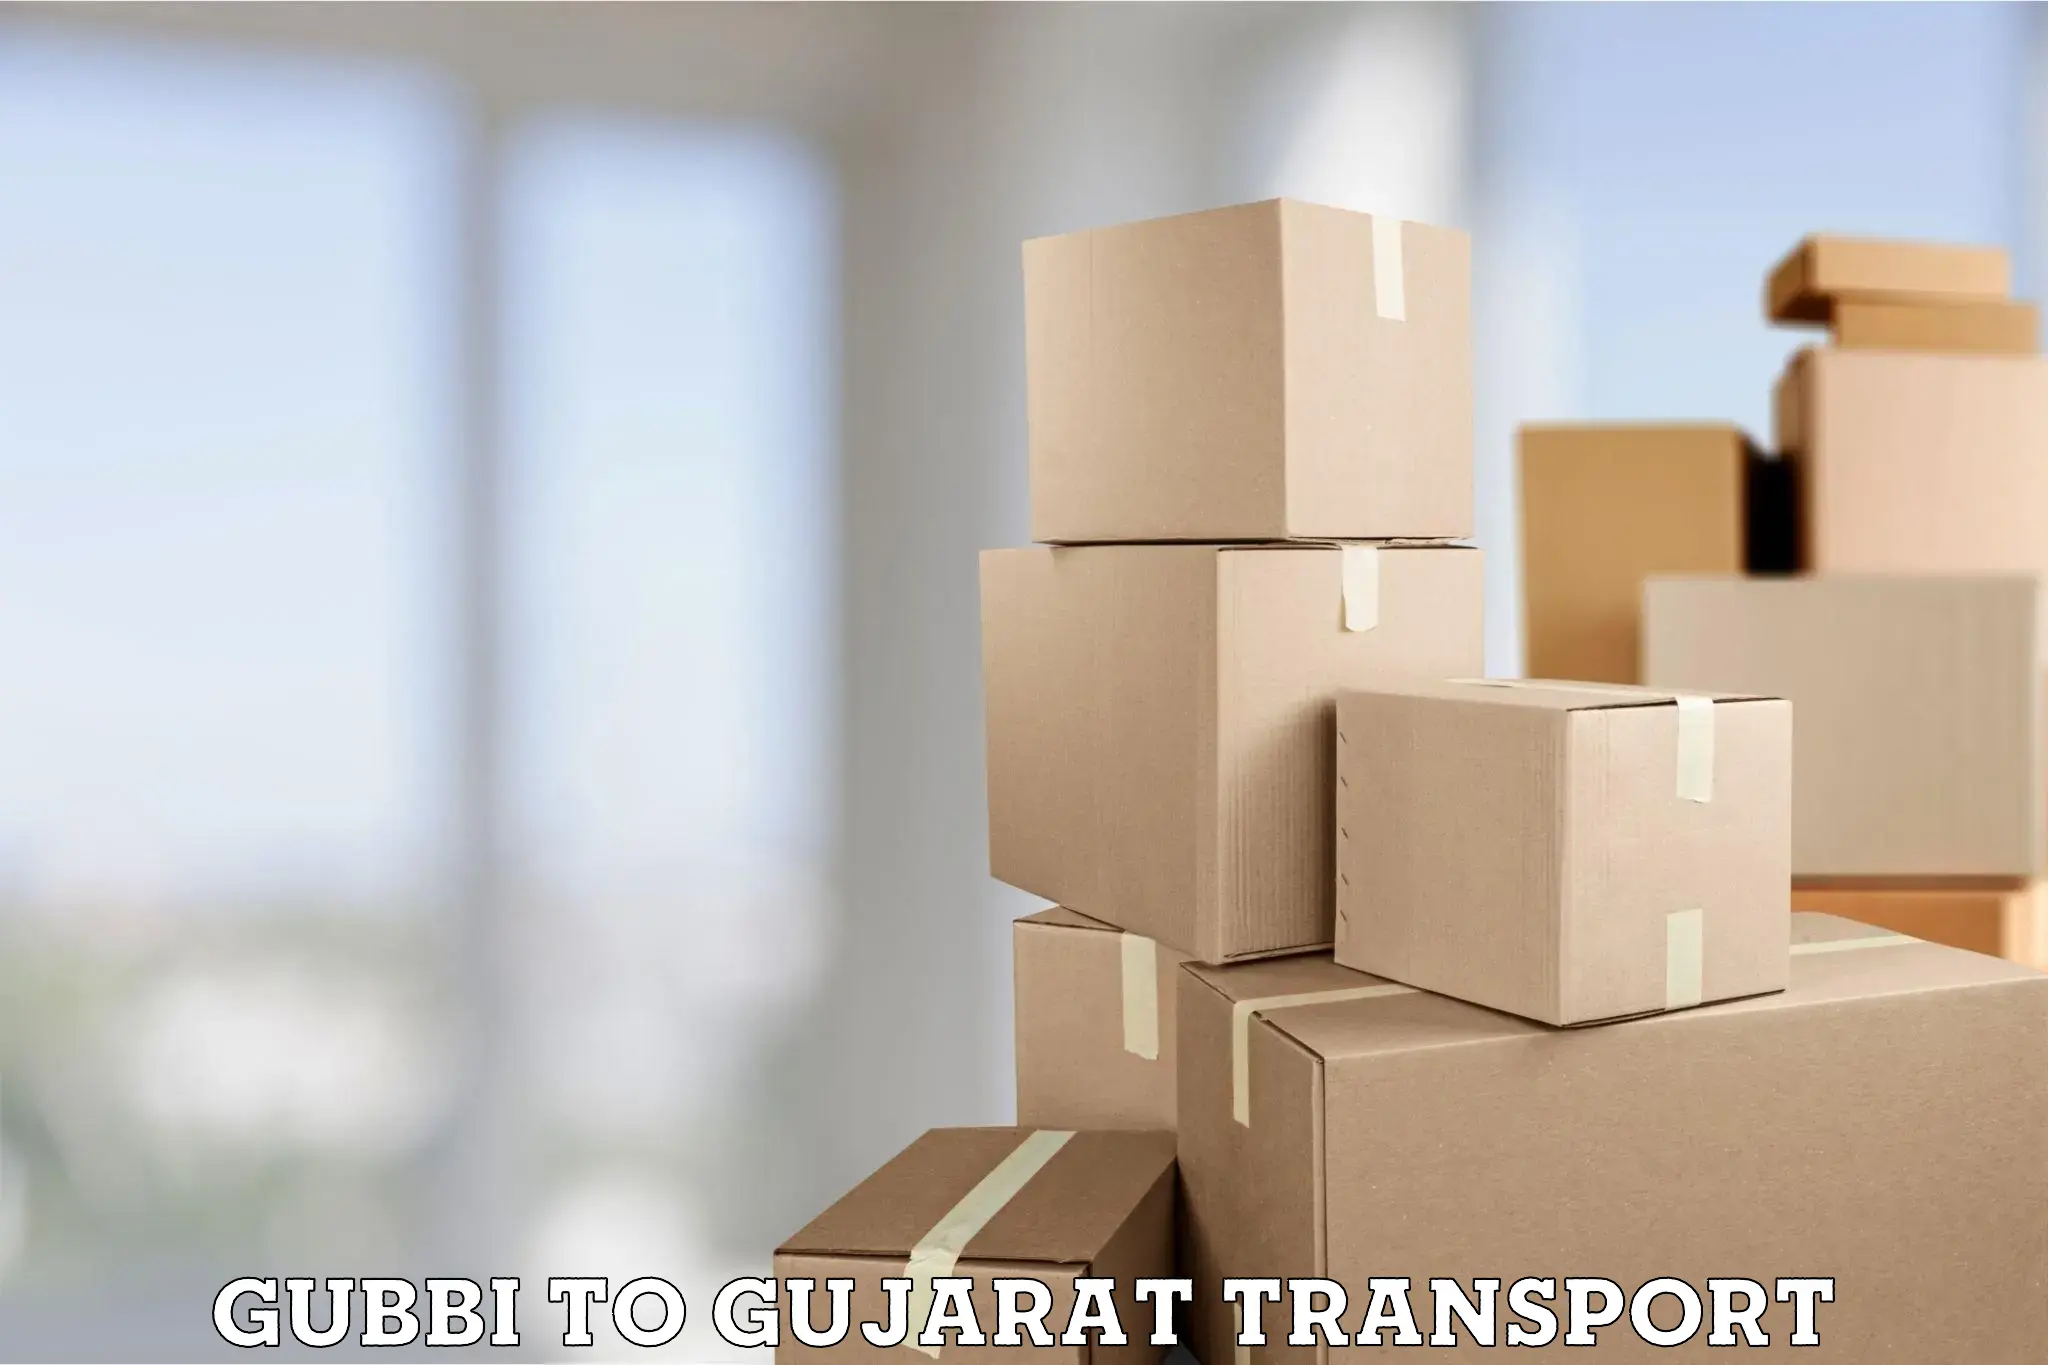 All India transport service Gubbi to Naliya